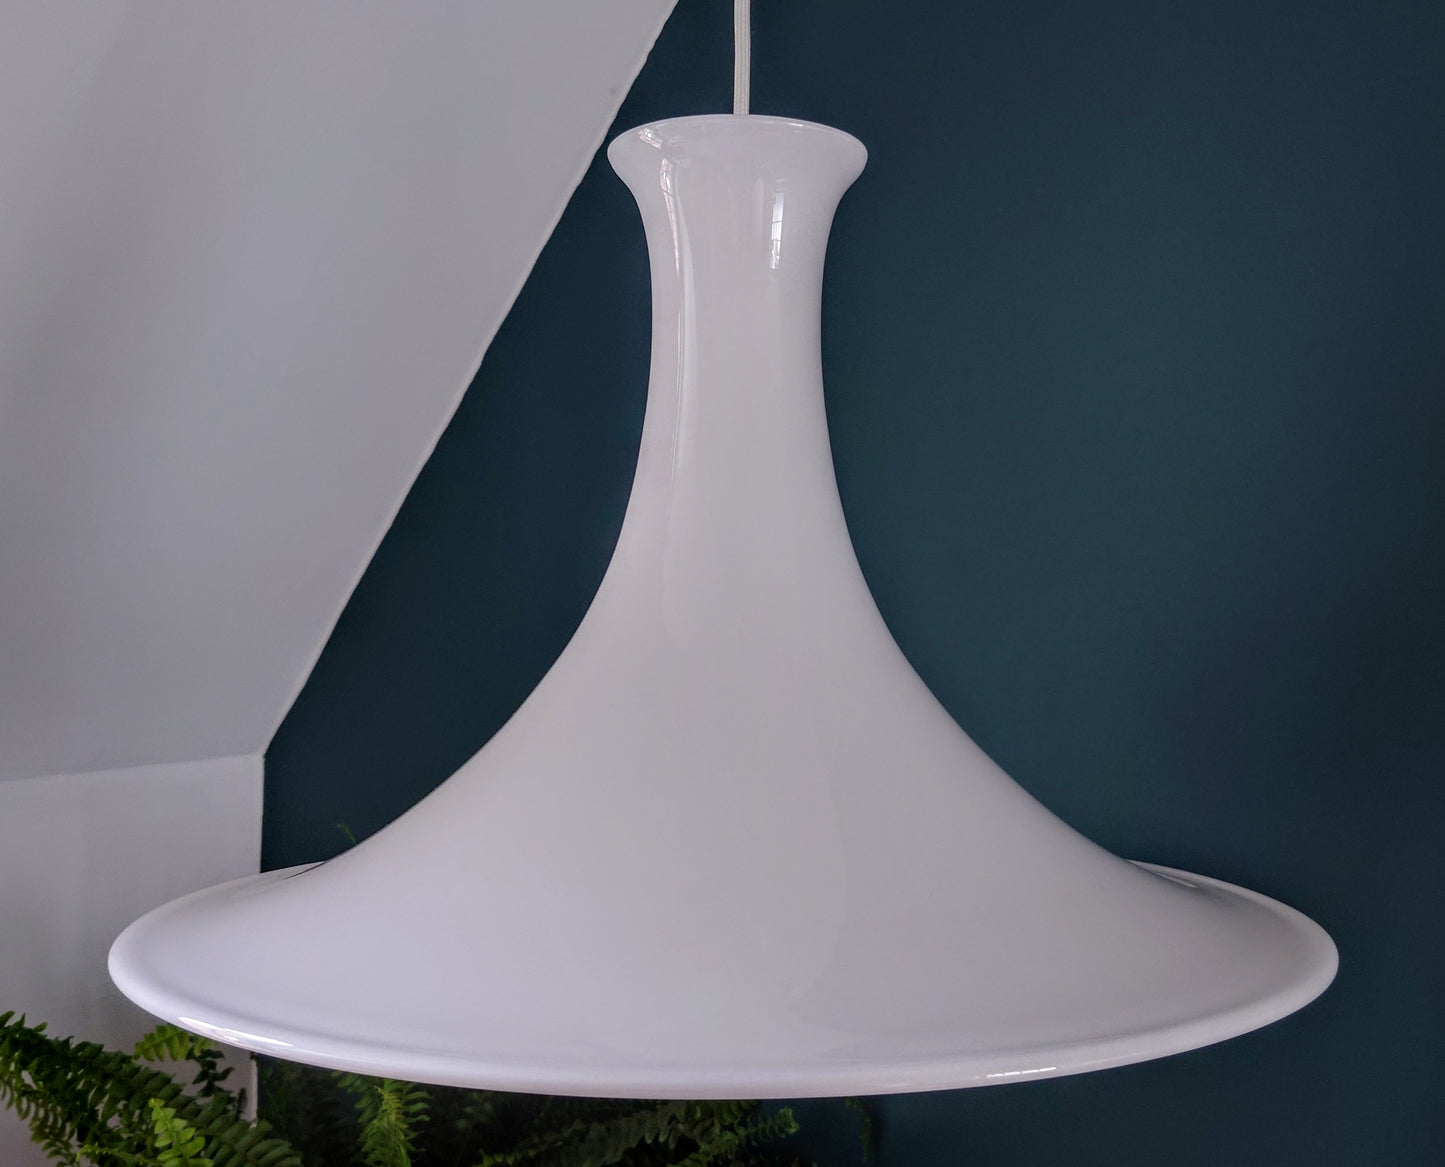 HUGE Holmegaard Danish White Glass Pendant Lamp Ceiling Light Mandarin 1980s Retro Scandinavian Scandi Design Style